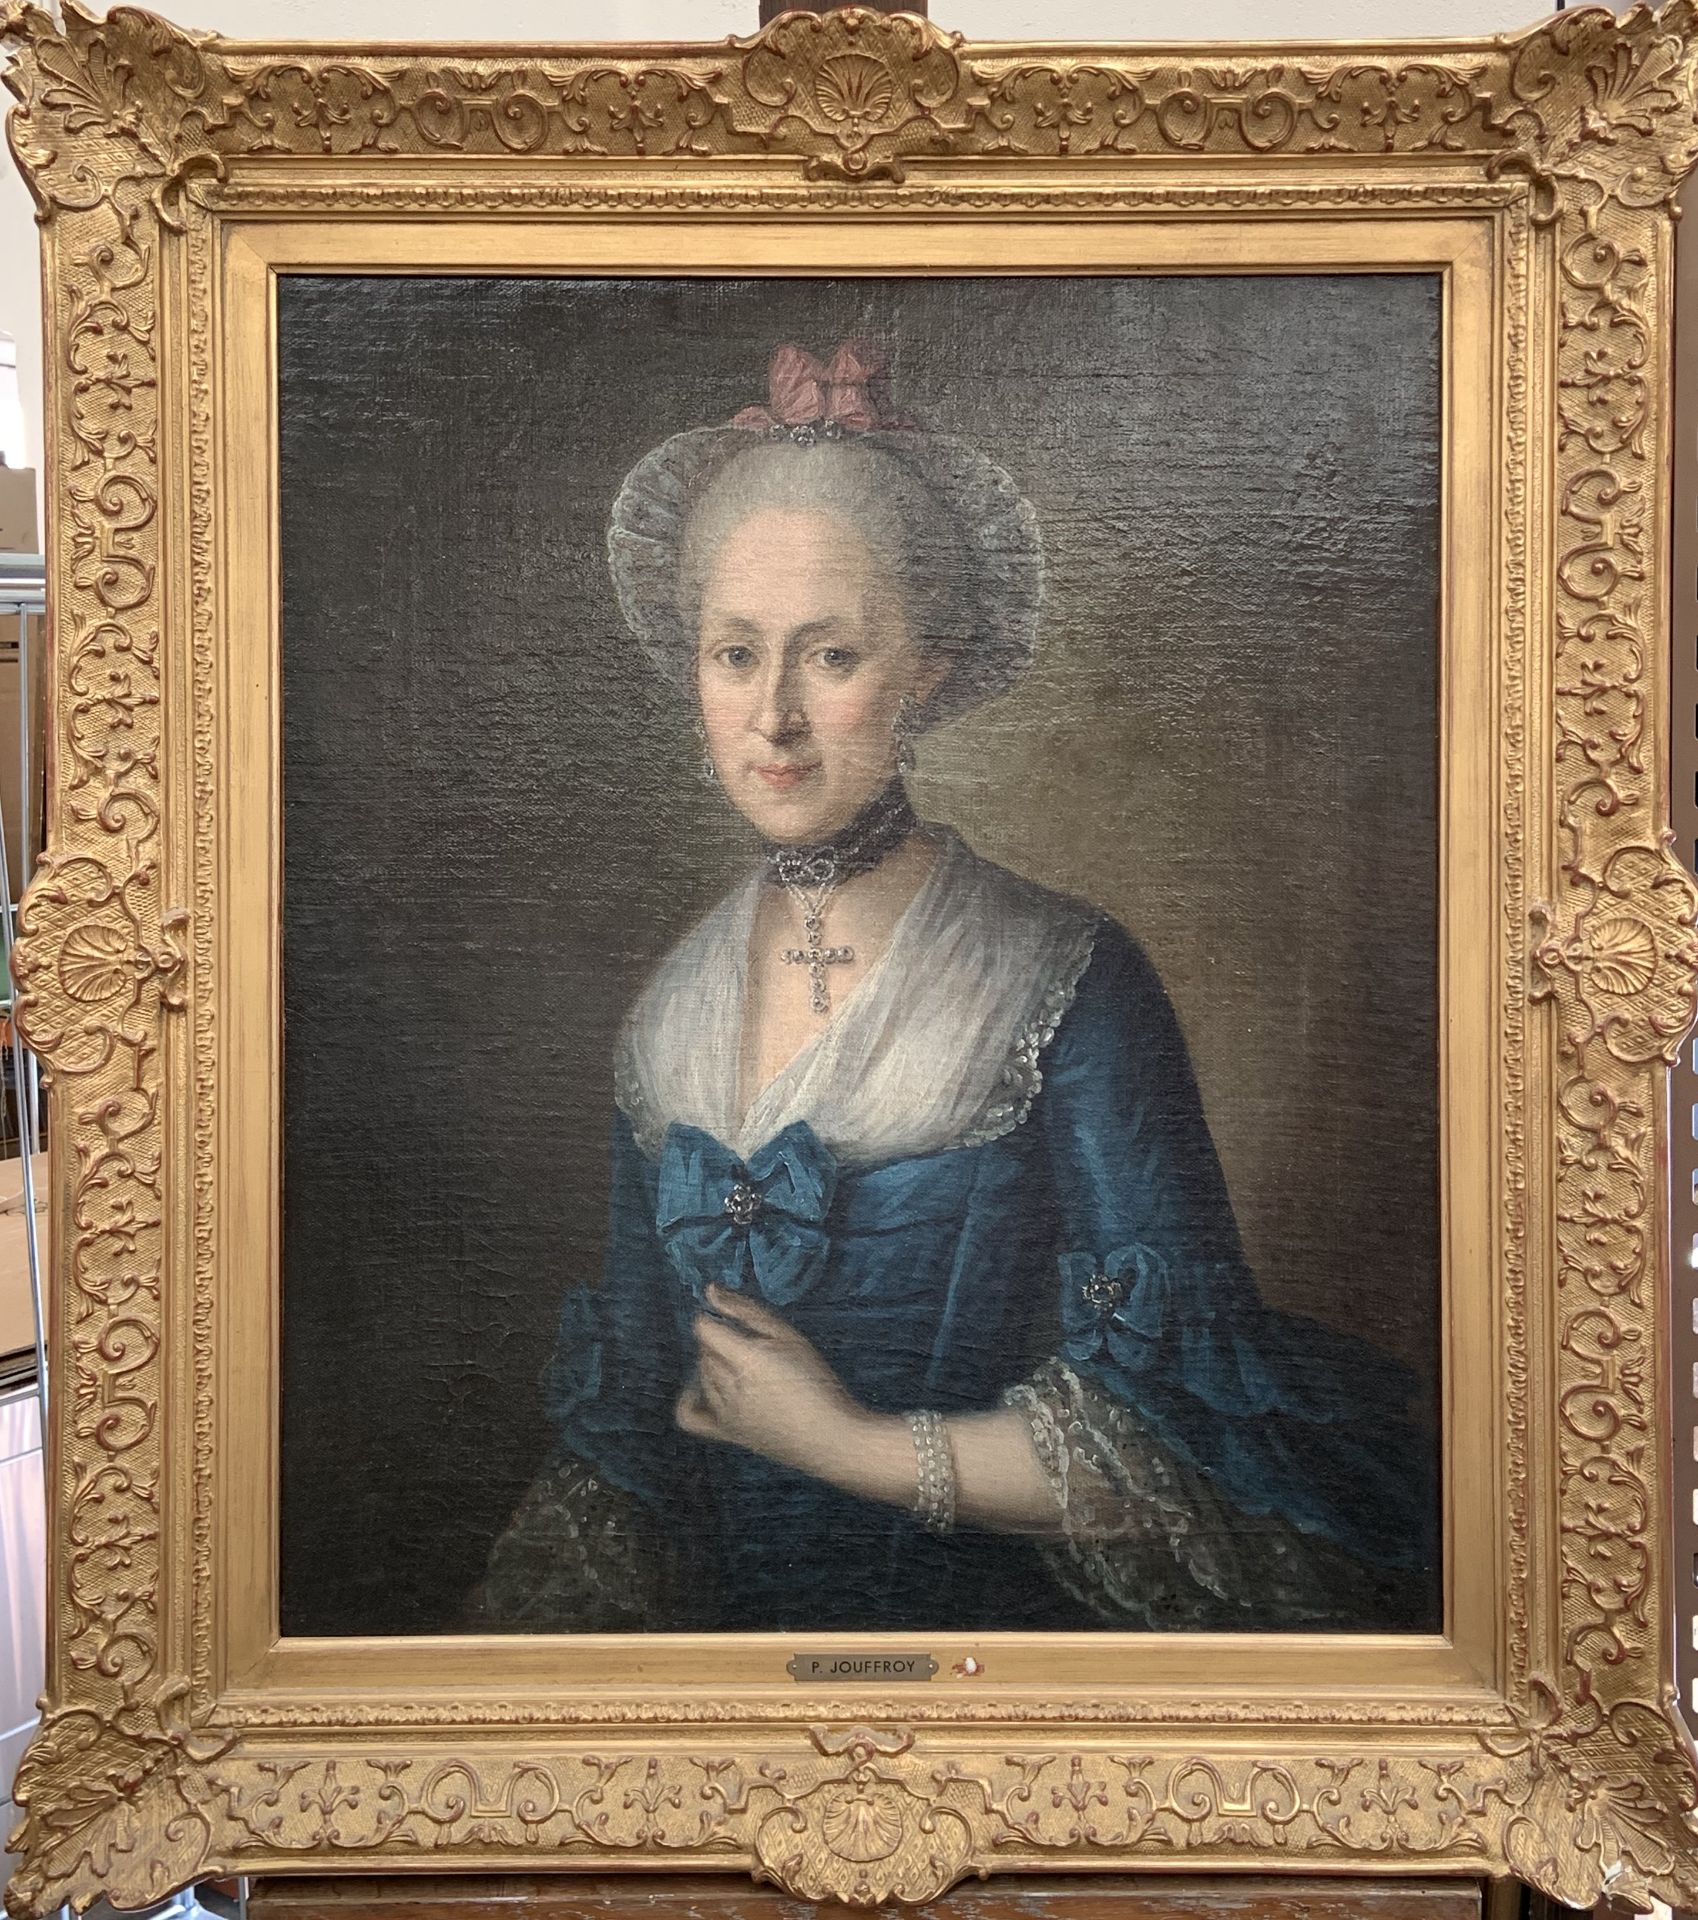 Pierre JOUFFROY. Portrait de dame de qualité. Huile sur toile. 73 x 63 cm. -